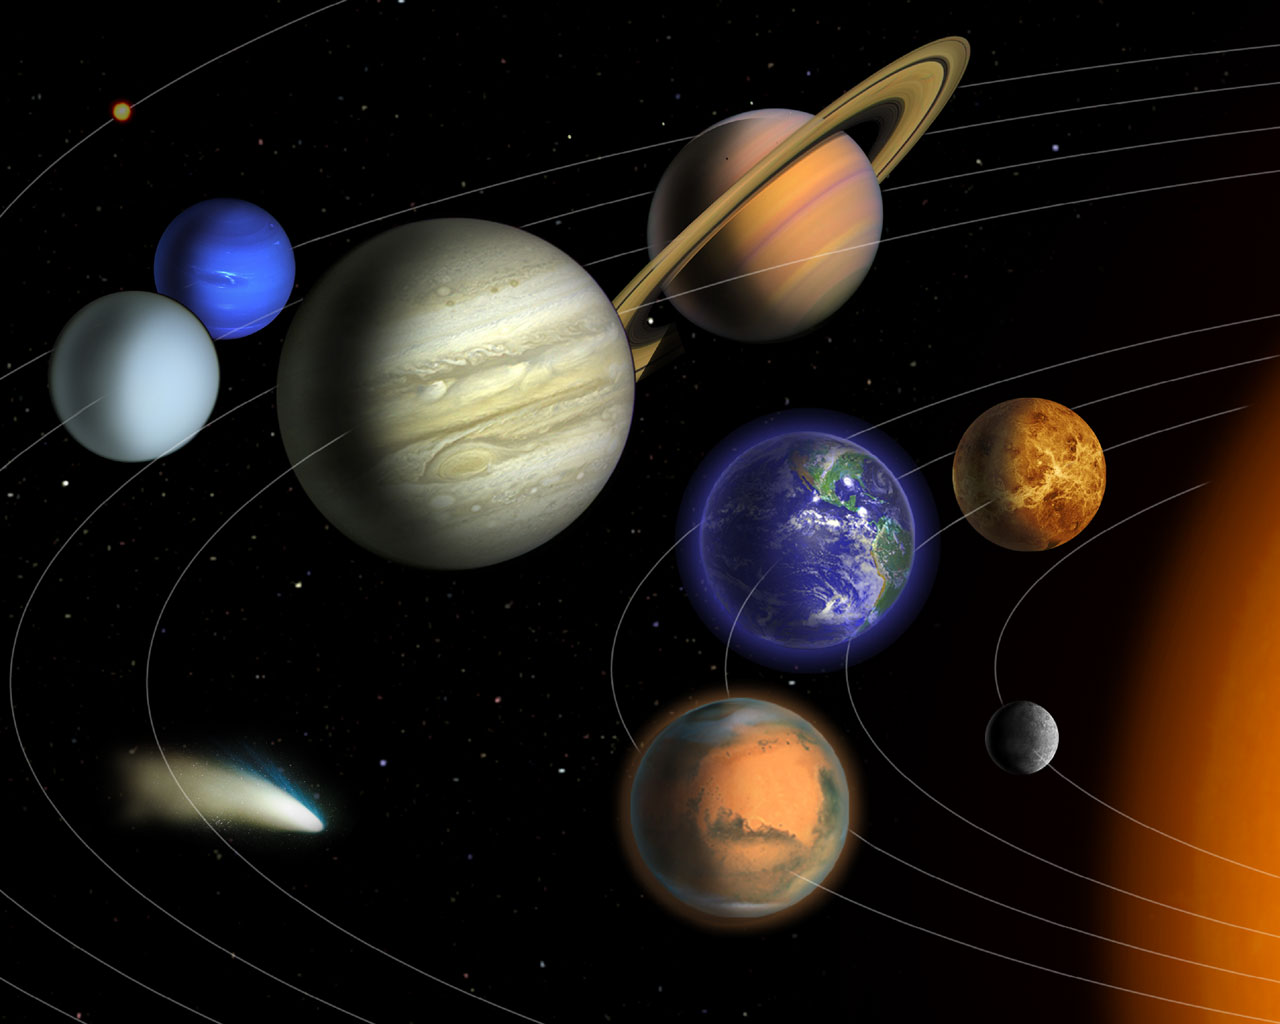 tapete des sonnensystems,planet,astronomisches objekt,astronomie,weltraum,atmosphäre